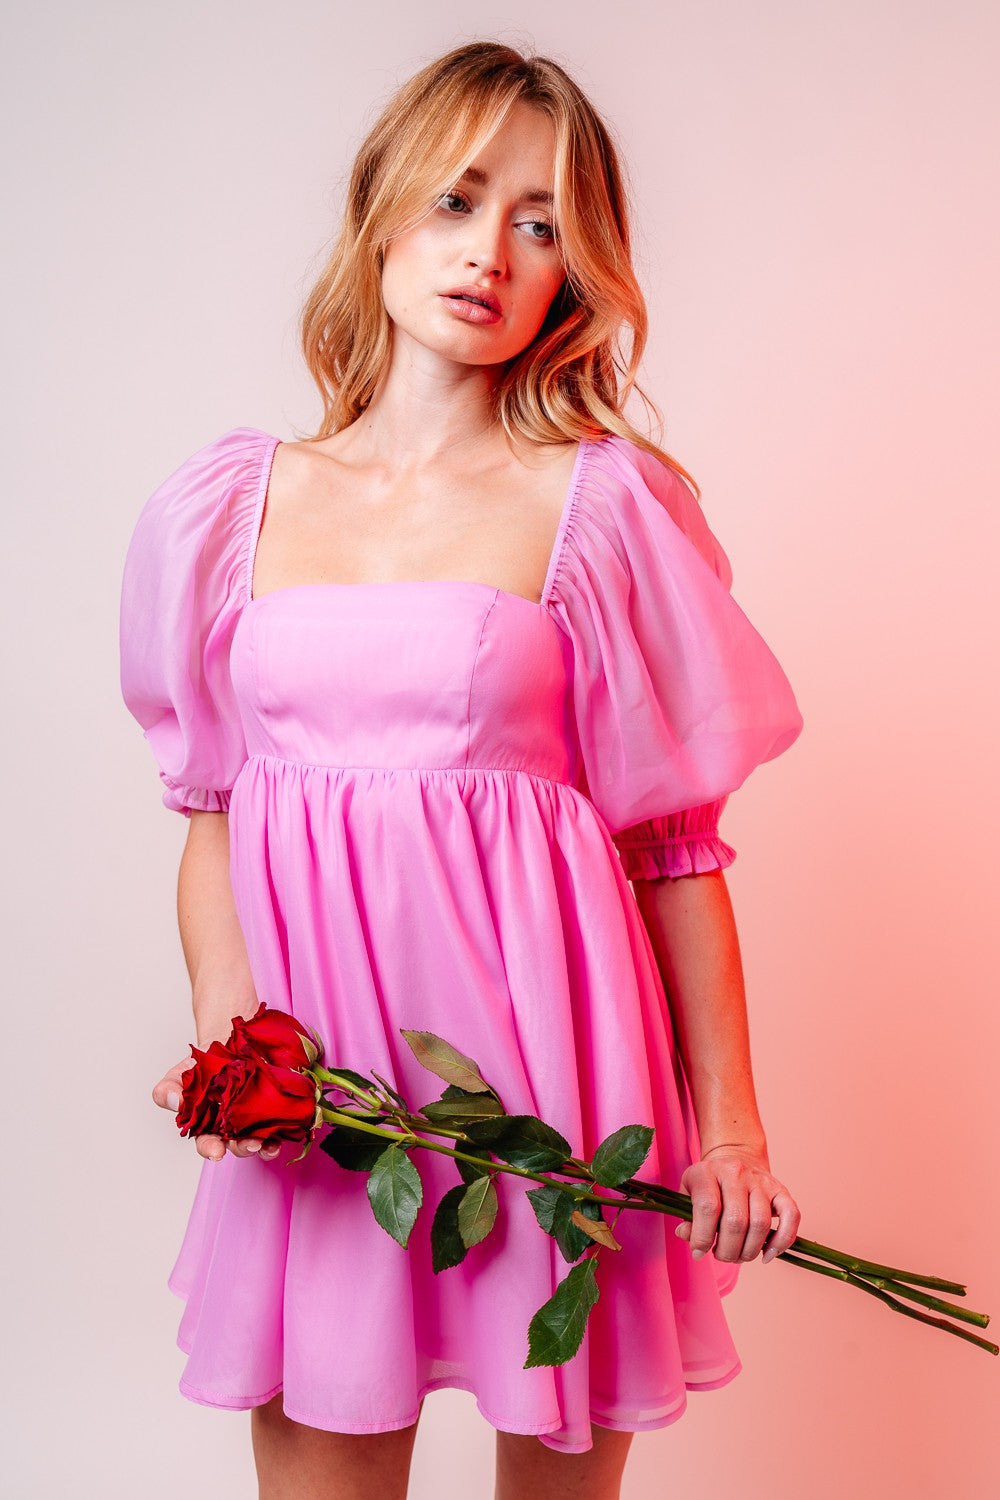 Blushing Rose Dress